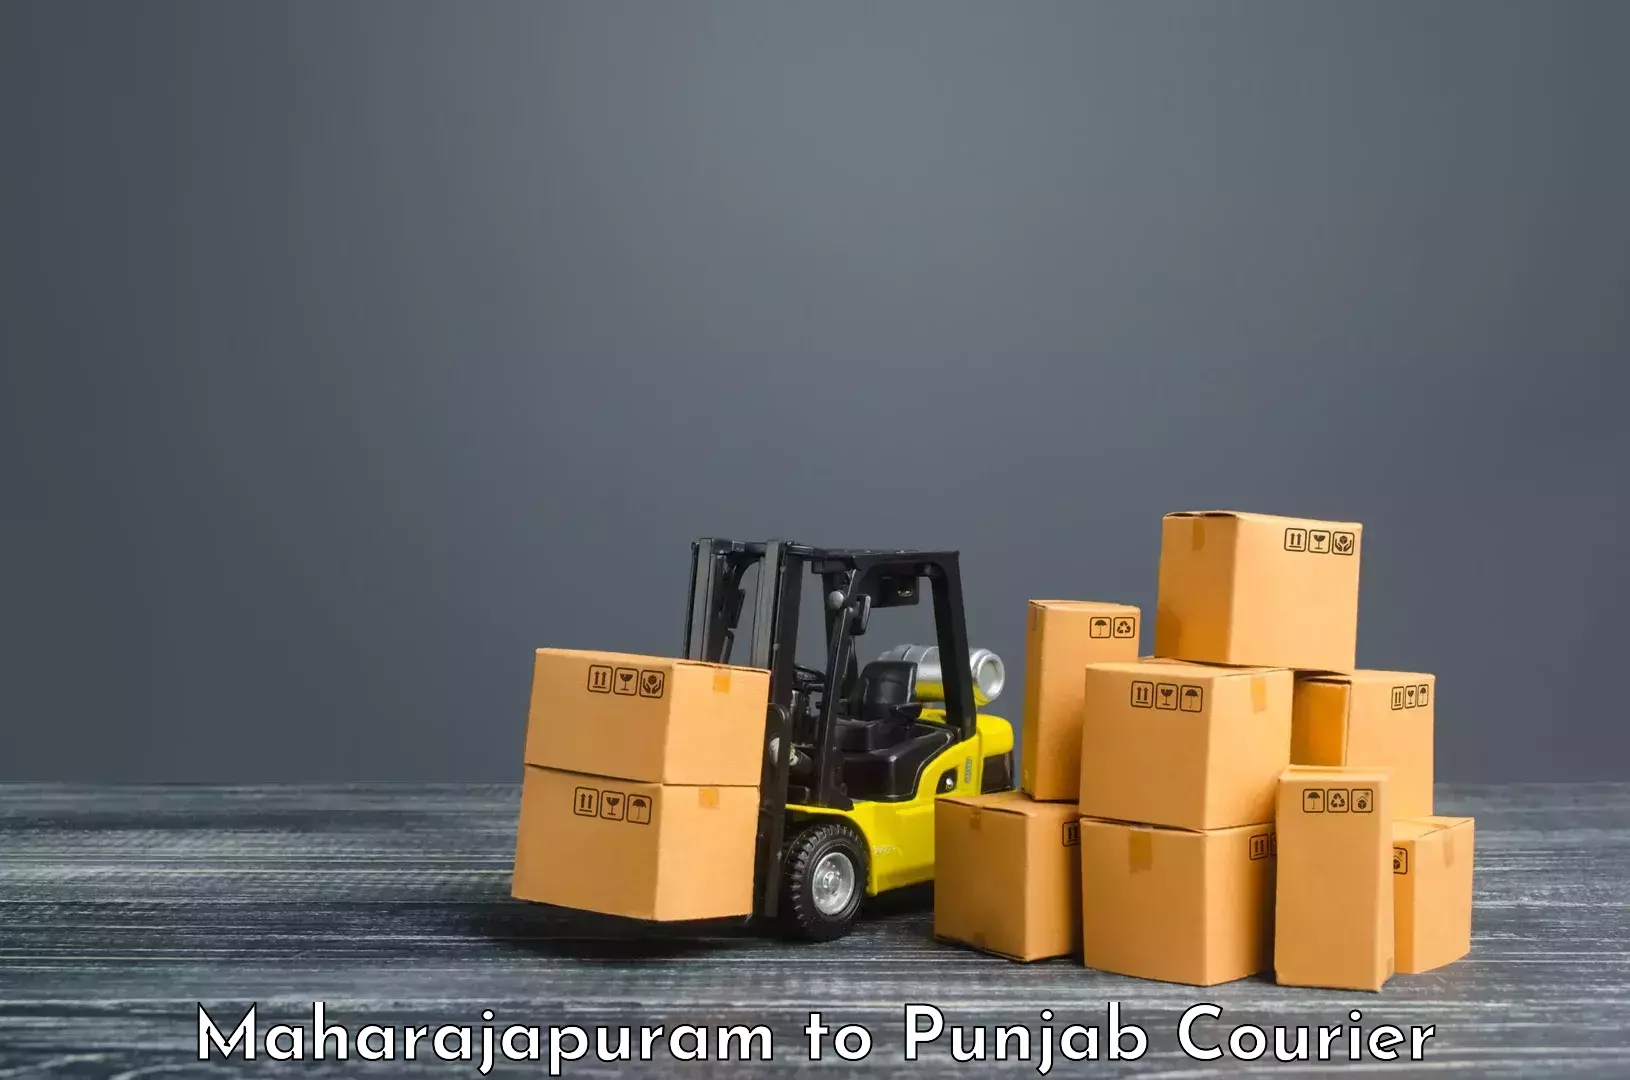 Global parcel delivery Maharajapuram to Jalandhar